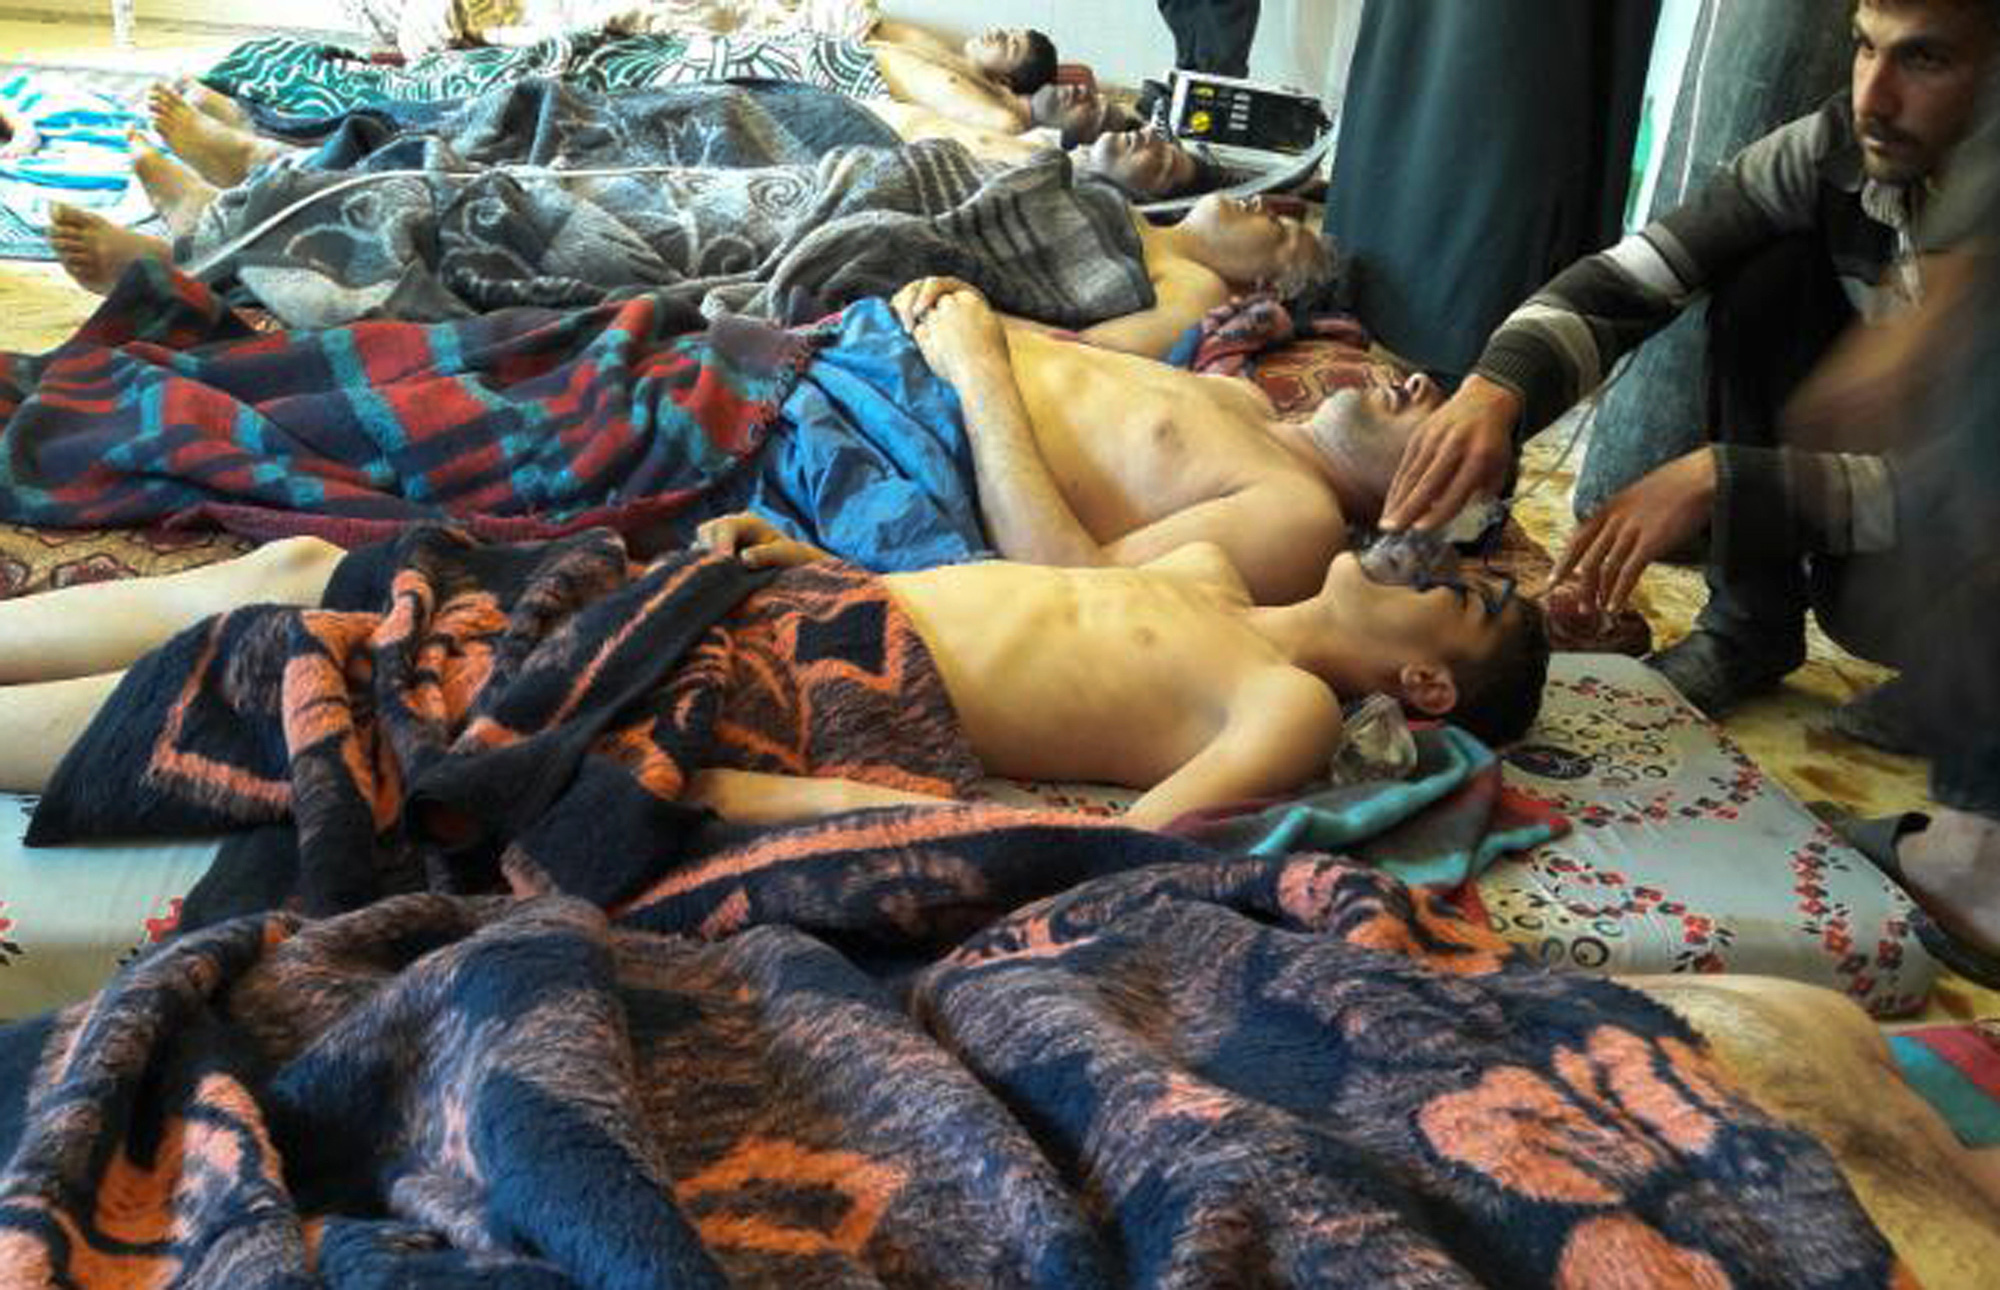 Las víctimas de un presunto ataque con armas químicas del régimen de Bashar al Assad yacen en el suelo, en Khan Sheikhoun, en la provincia norteña de Idlib, Siria, el 4 de abril de 2017. (Alaa Alyousef via AP, File)